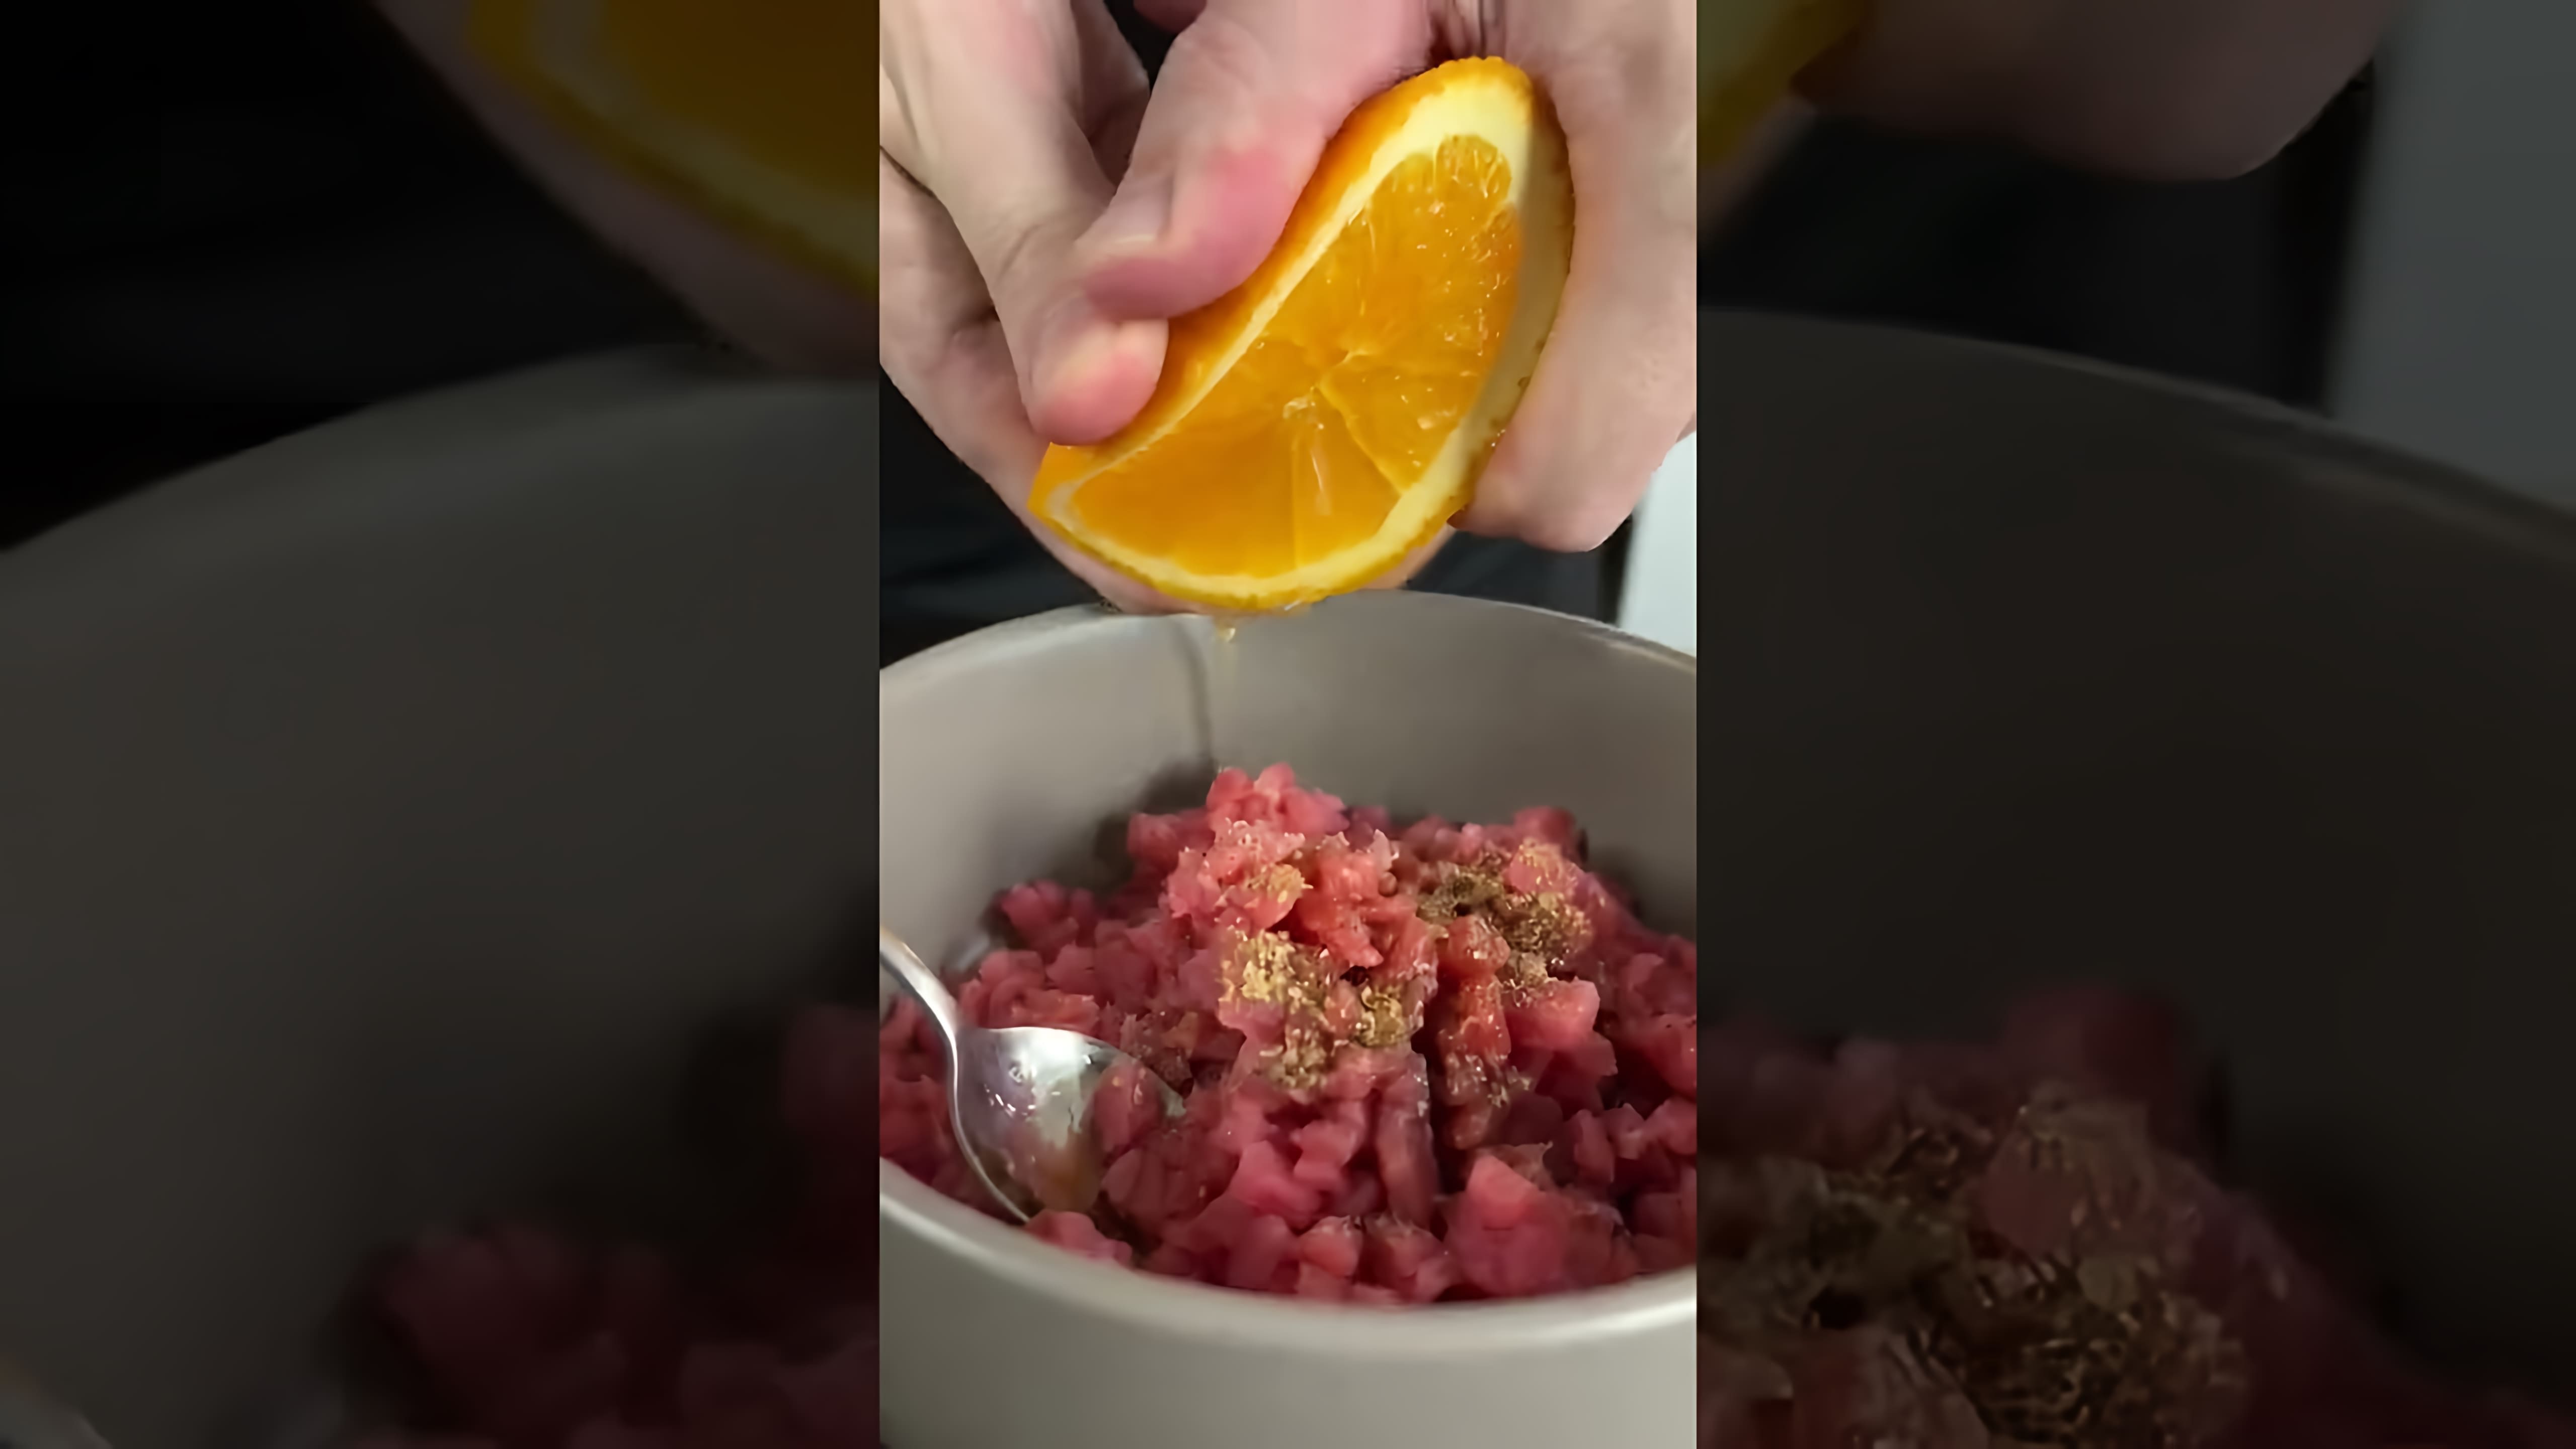 В этом видео демонстрируется процесс приготовления тартара из тунца, который любят многие